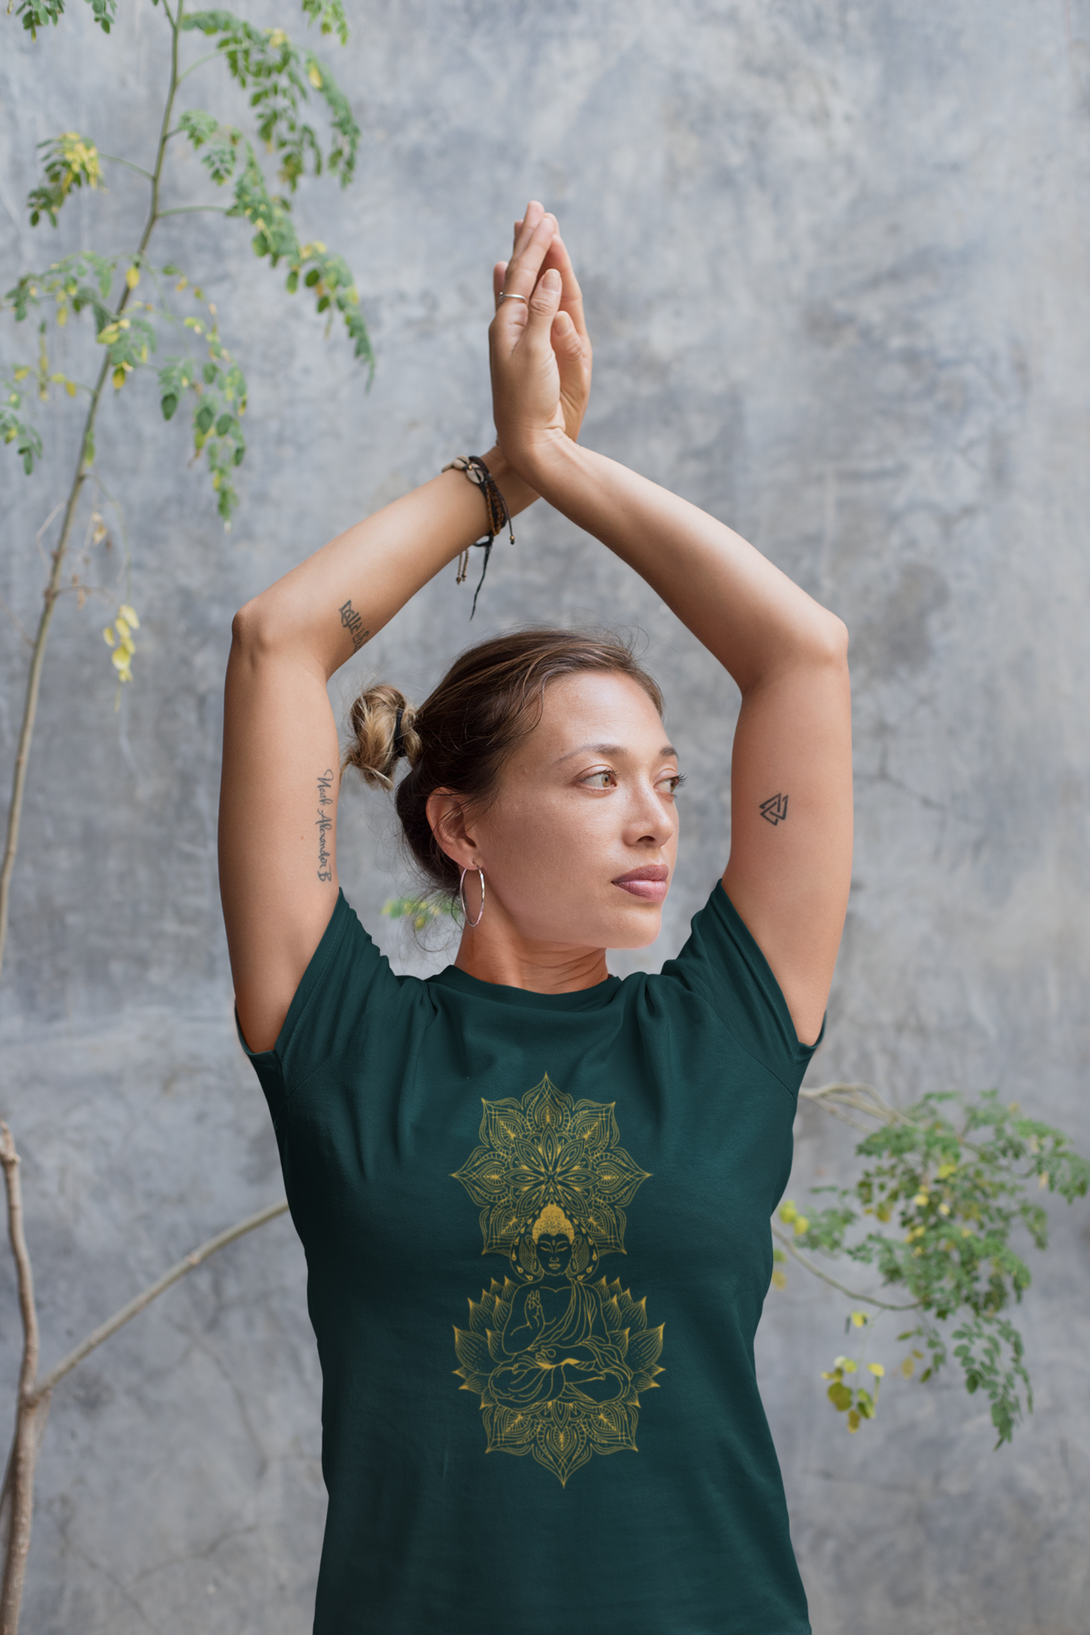 Enlightened Mandala Printed T-Shirt For Women - WowWaves - 2